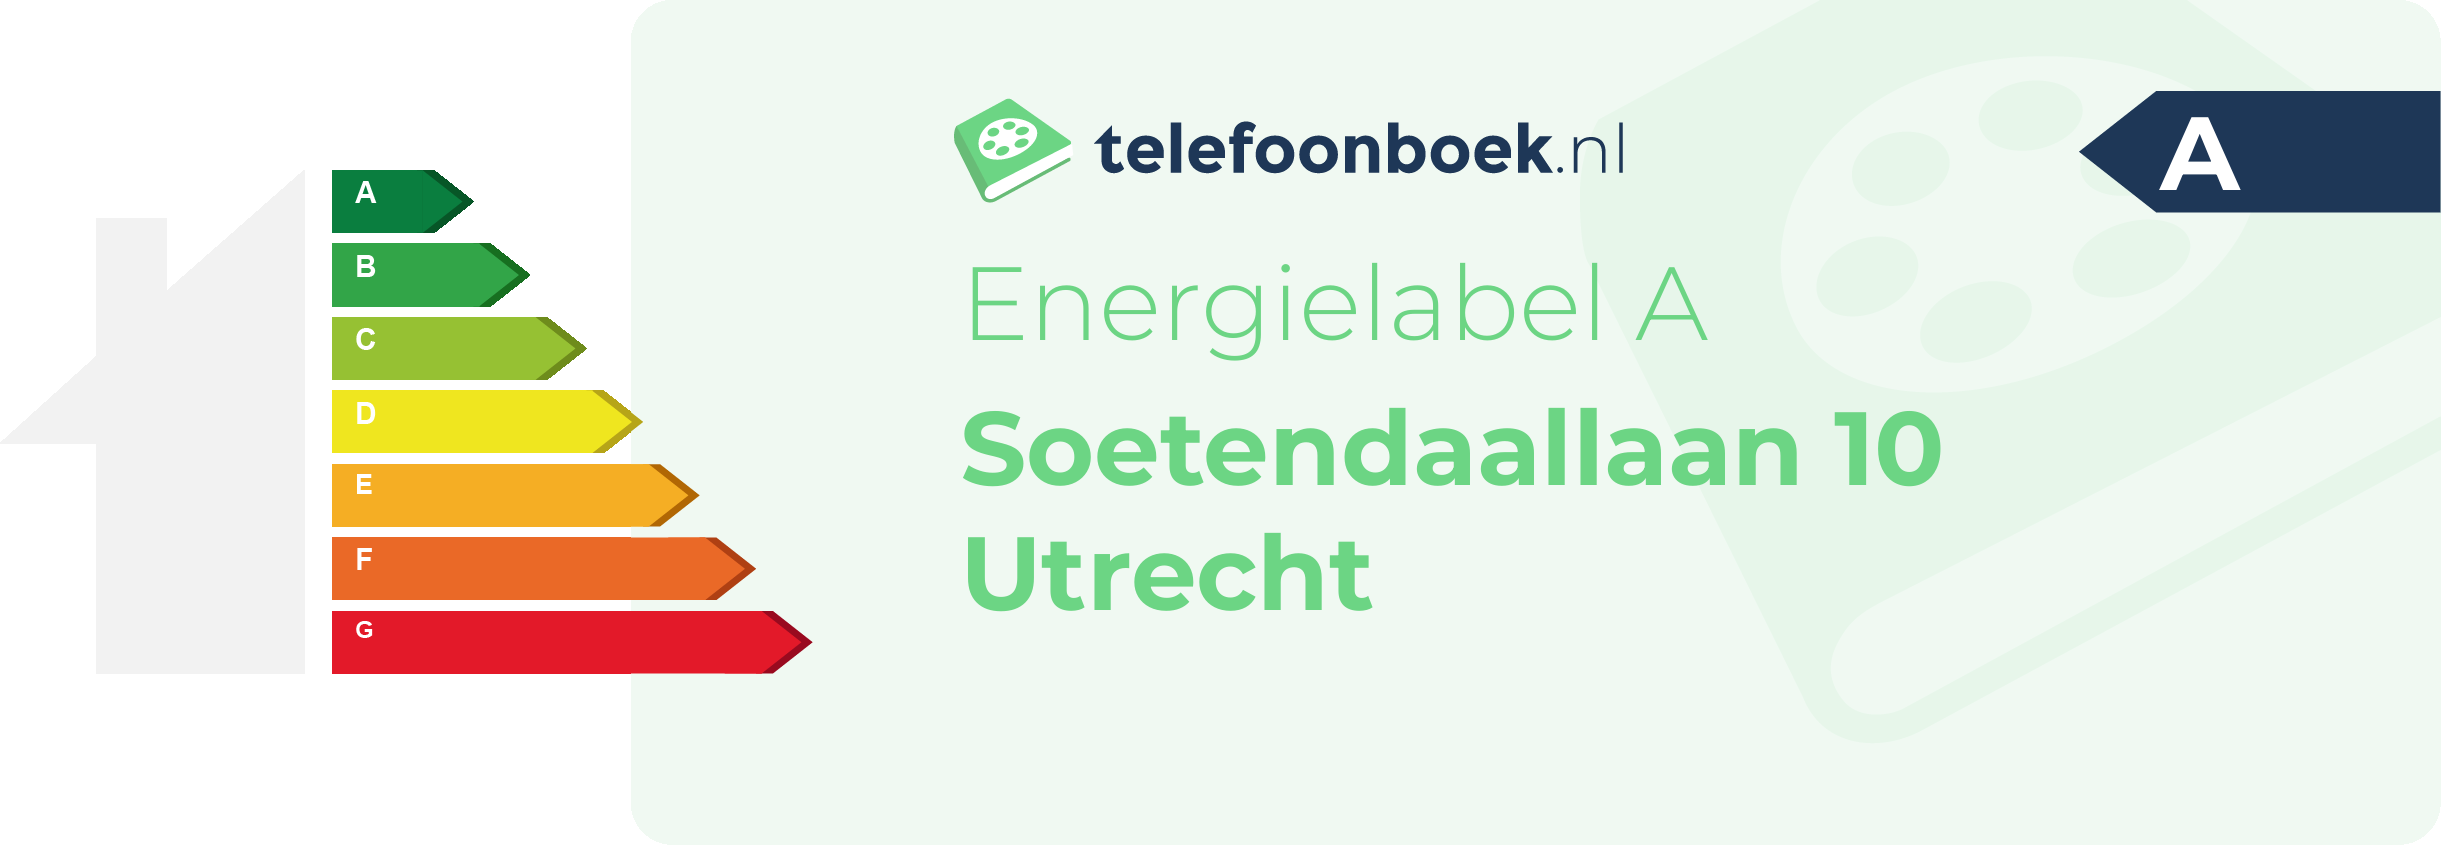 Energielabel Soetendaallaan 10 Utrecht